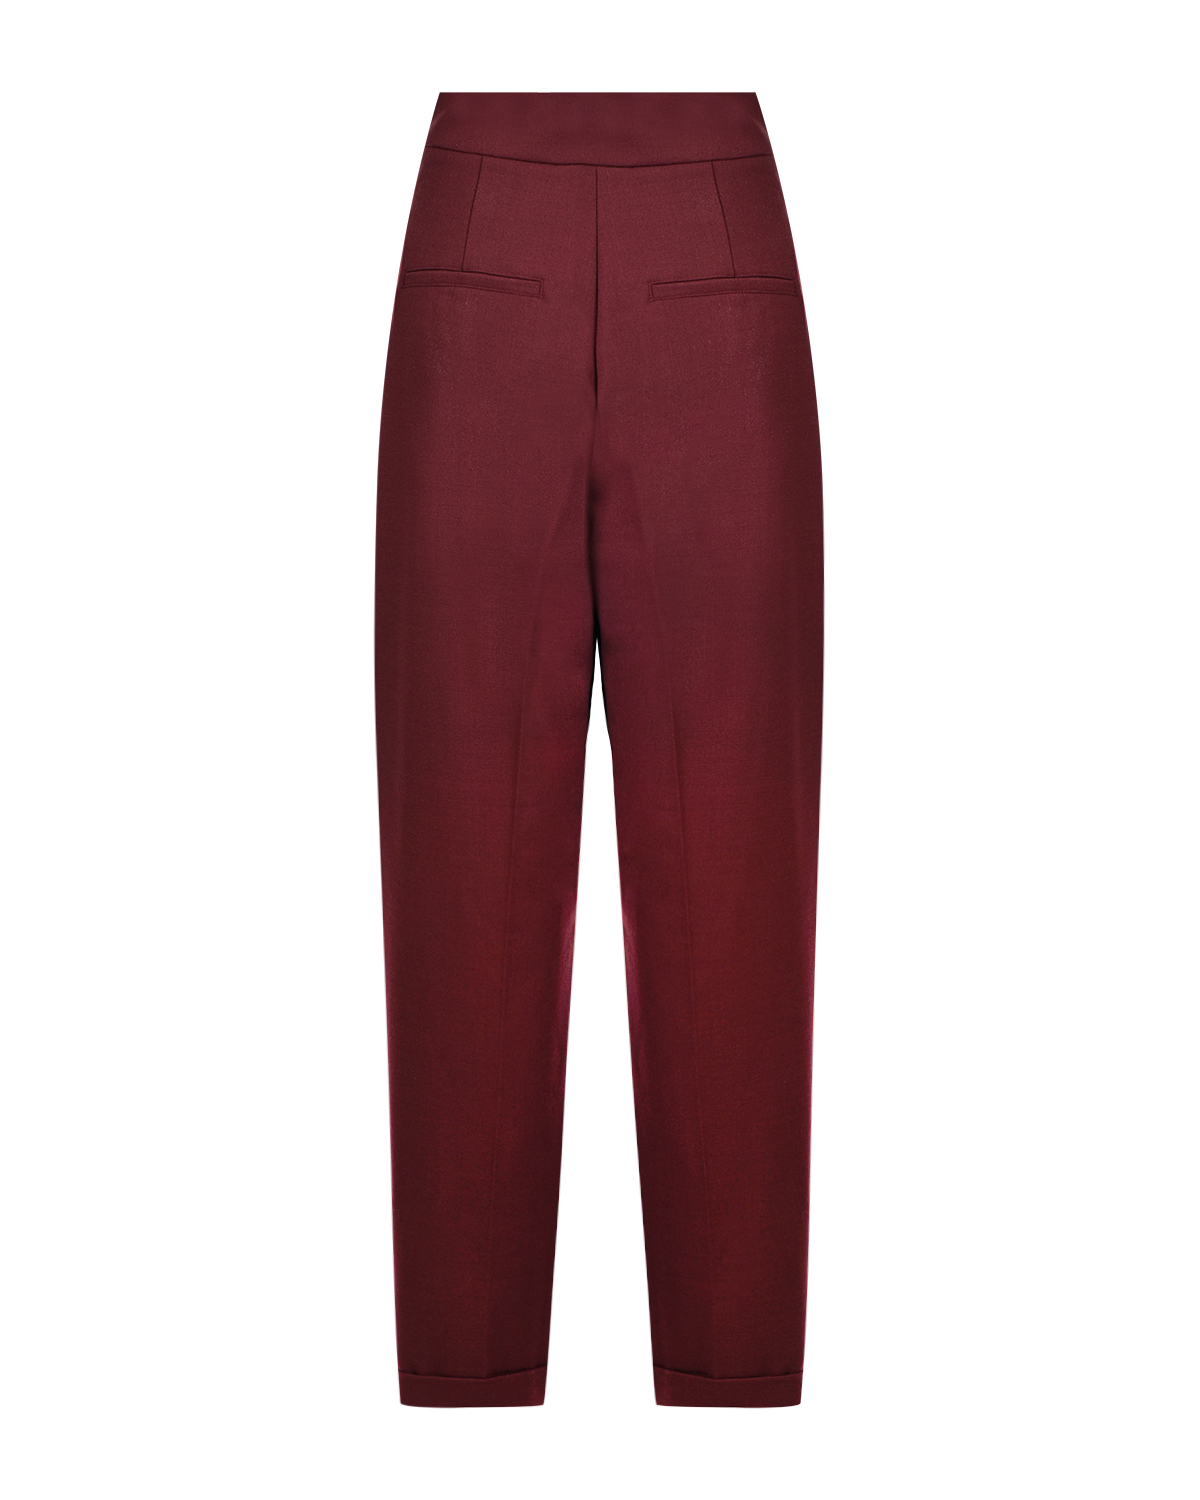 Бордовые брюки со складками MRZ - фото 5